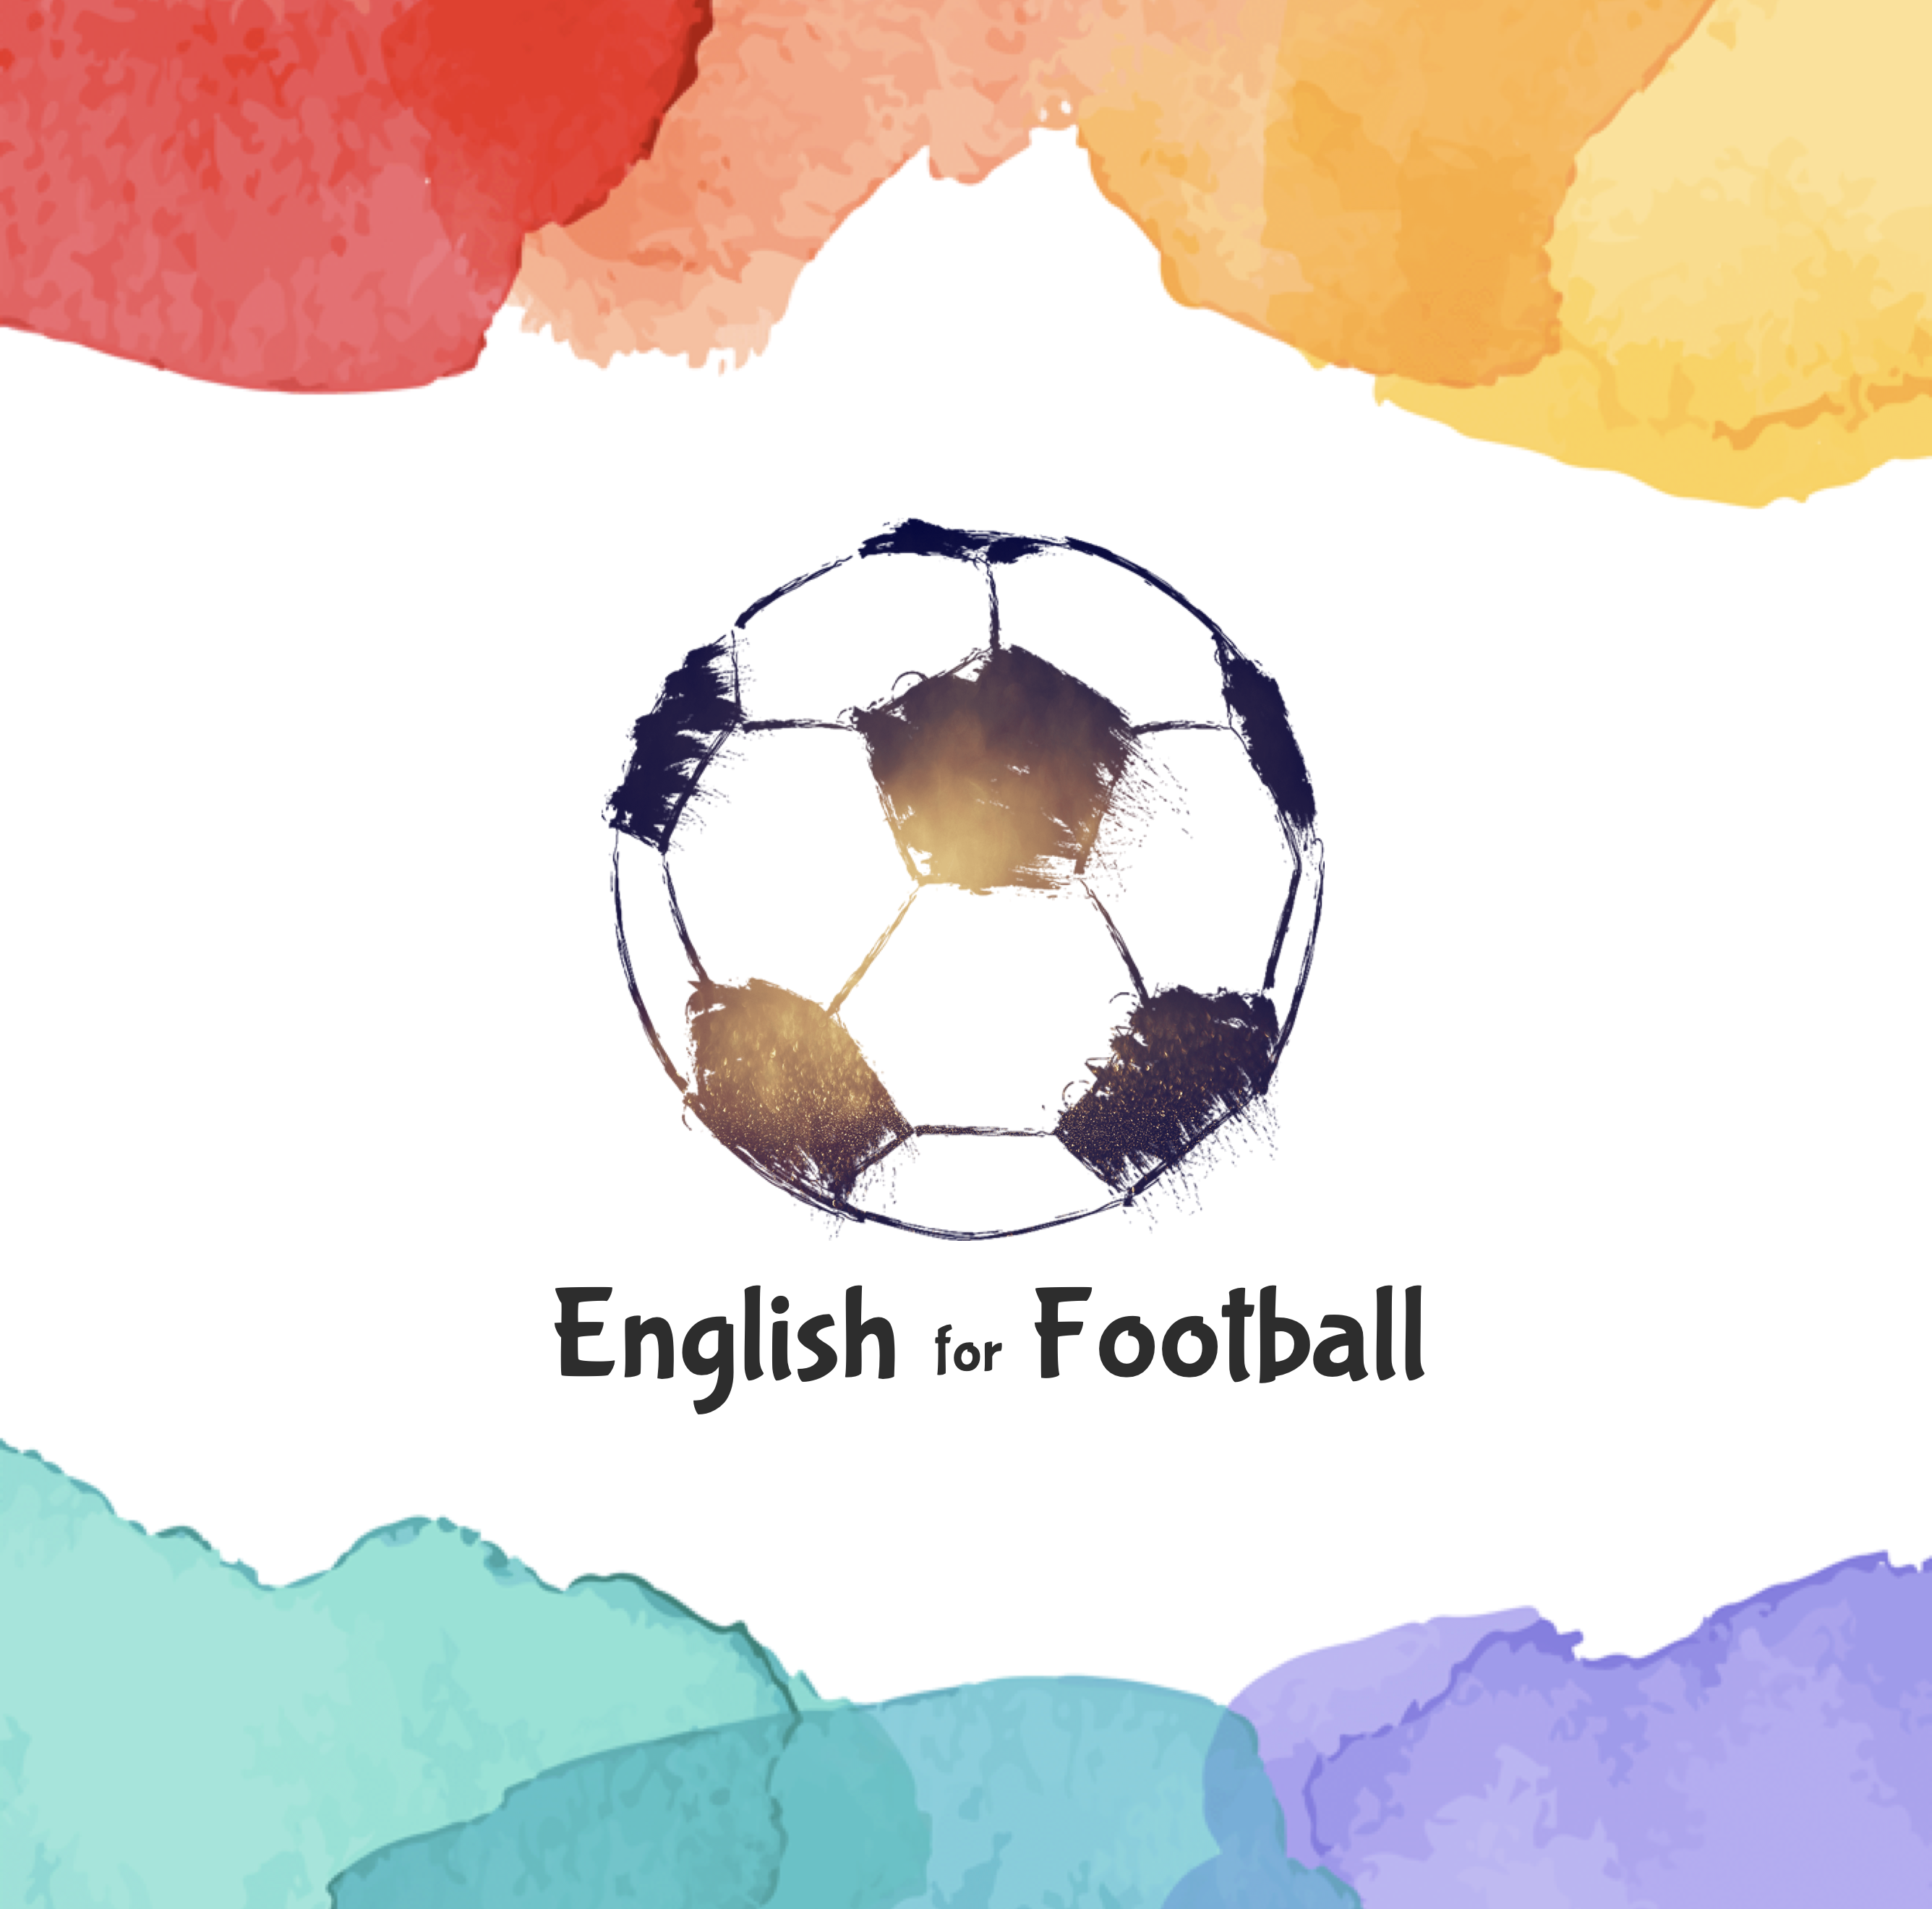 試合データとして表示される英語ボキャブラリー フレーズ50 サッカー英語 English For Football